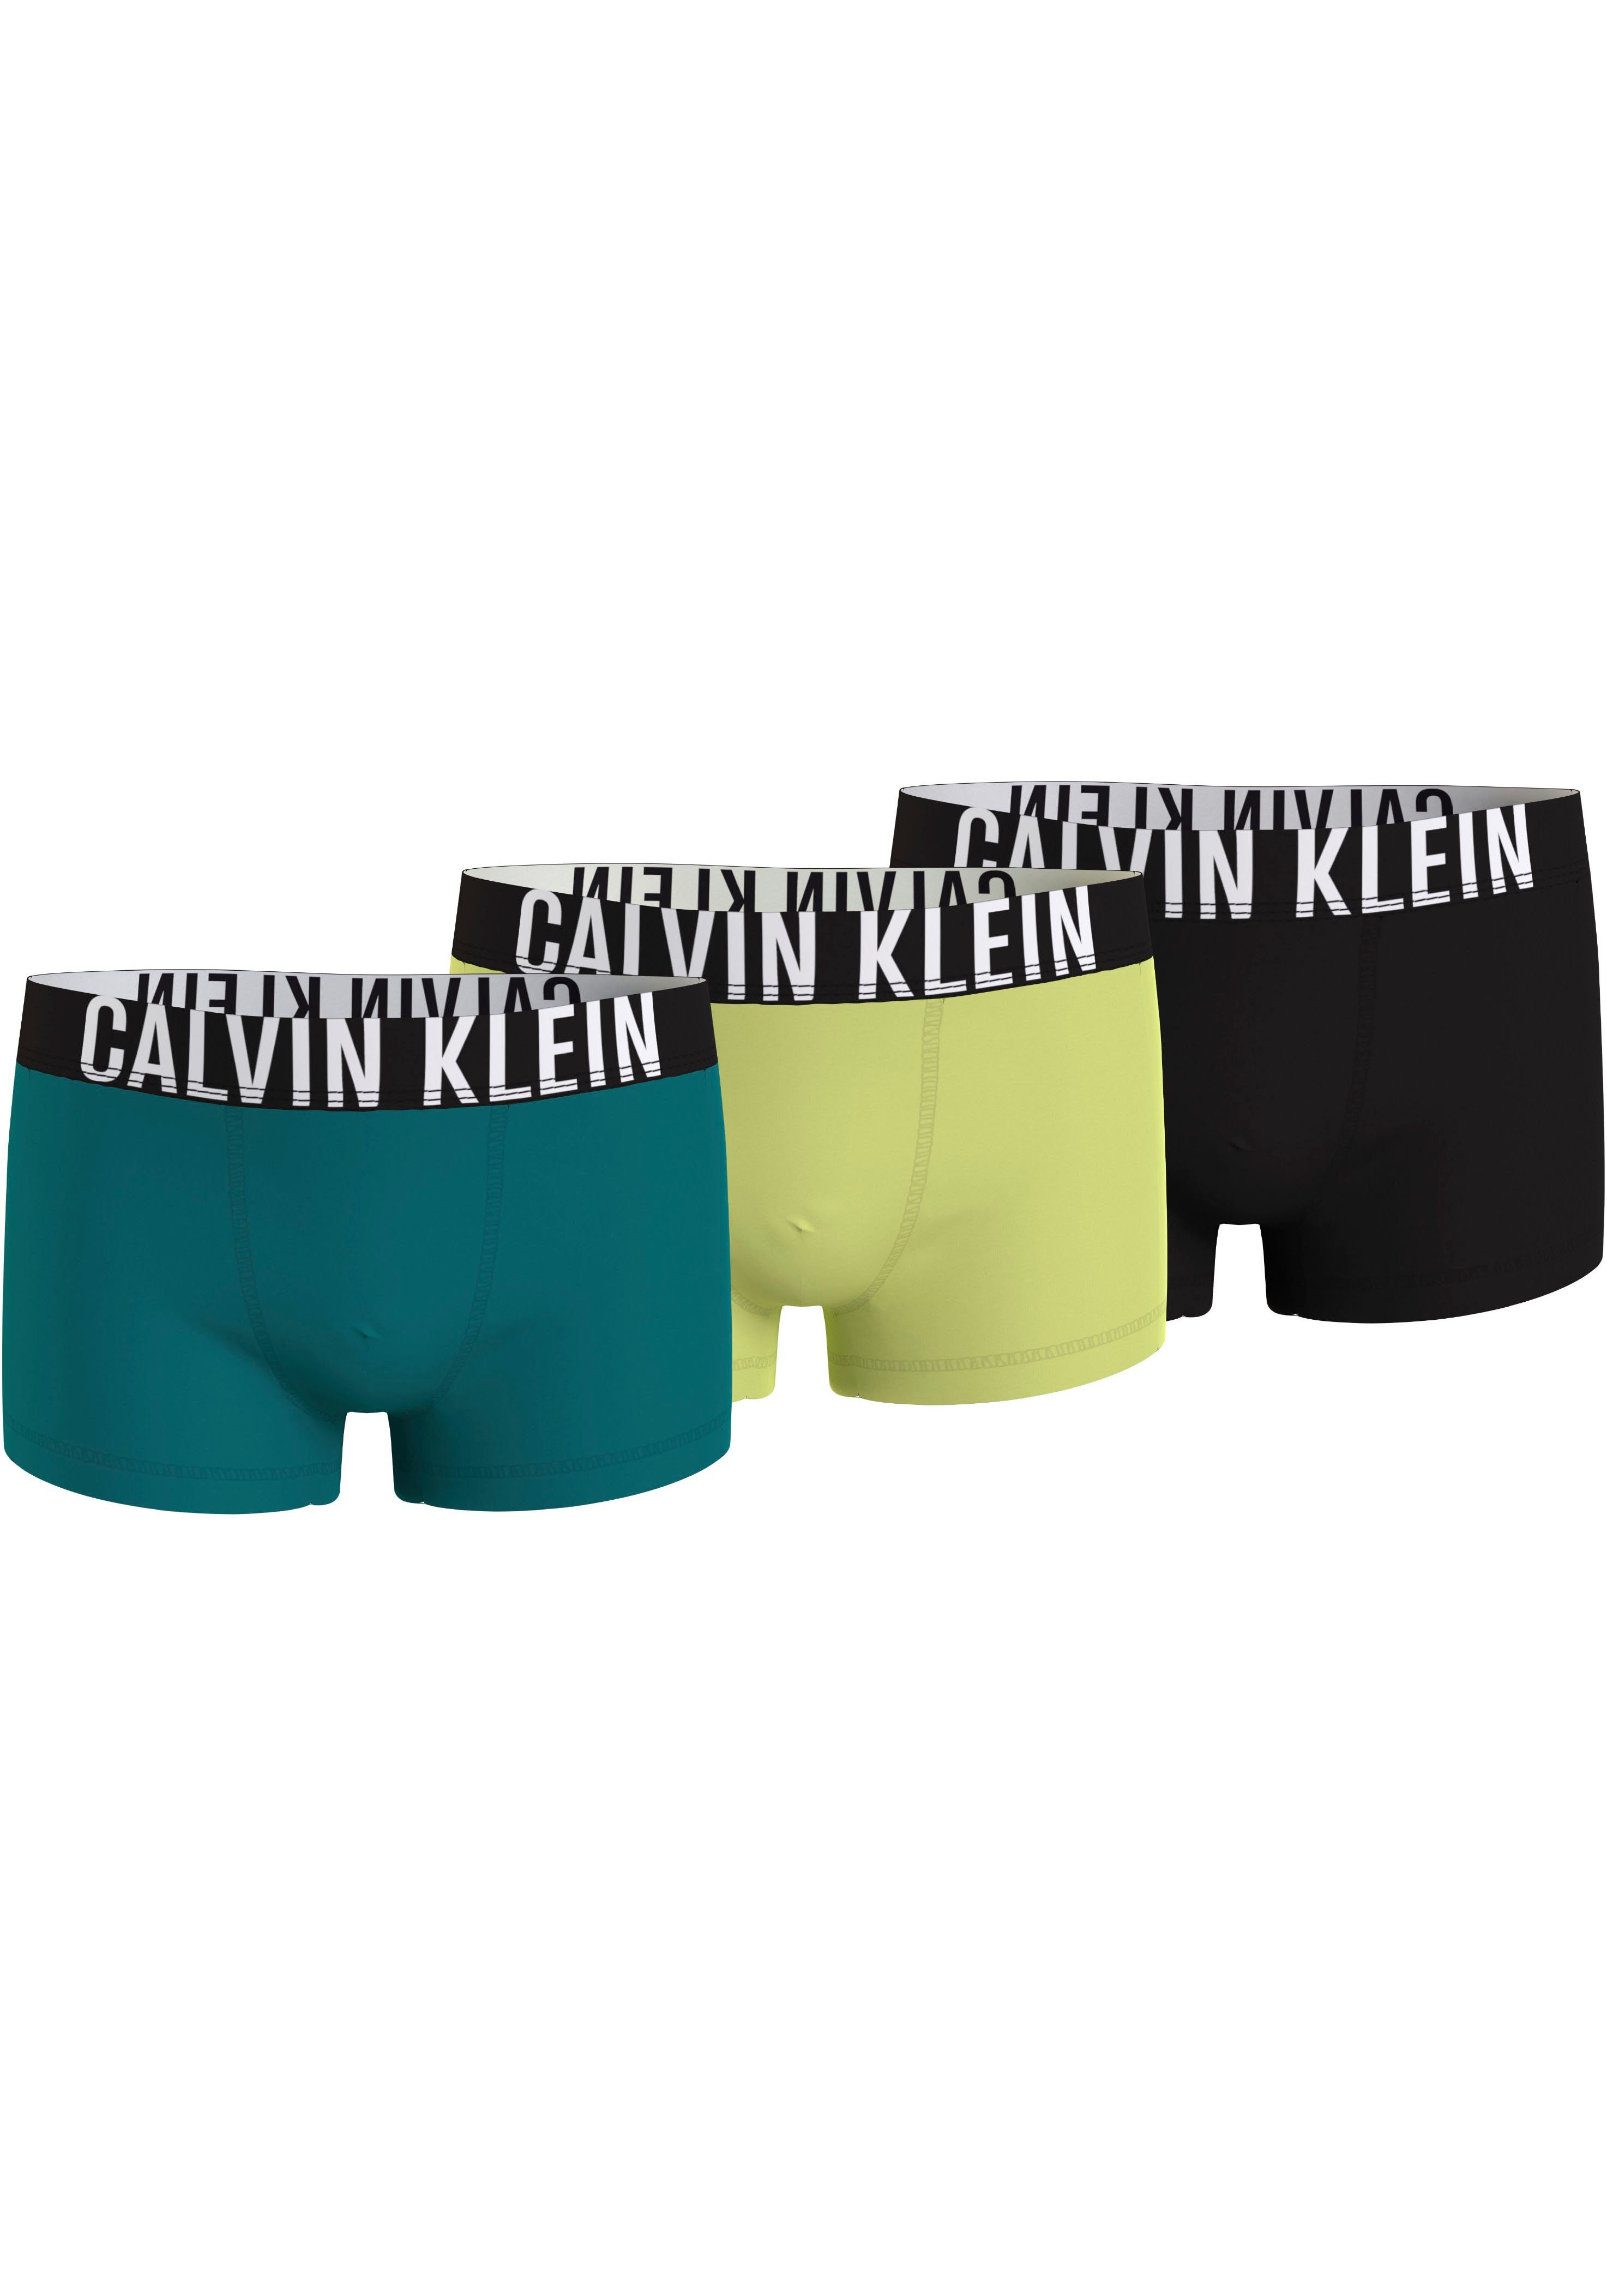 Calvin Klein boxershort set van 3 zwart geel blauw Jongens Biologisch katoen 140-152